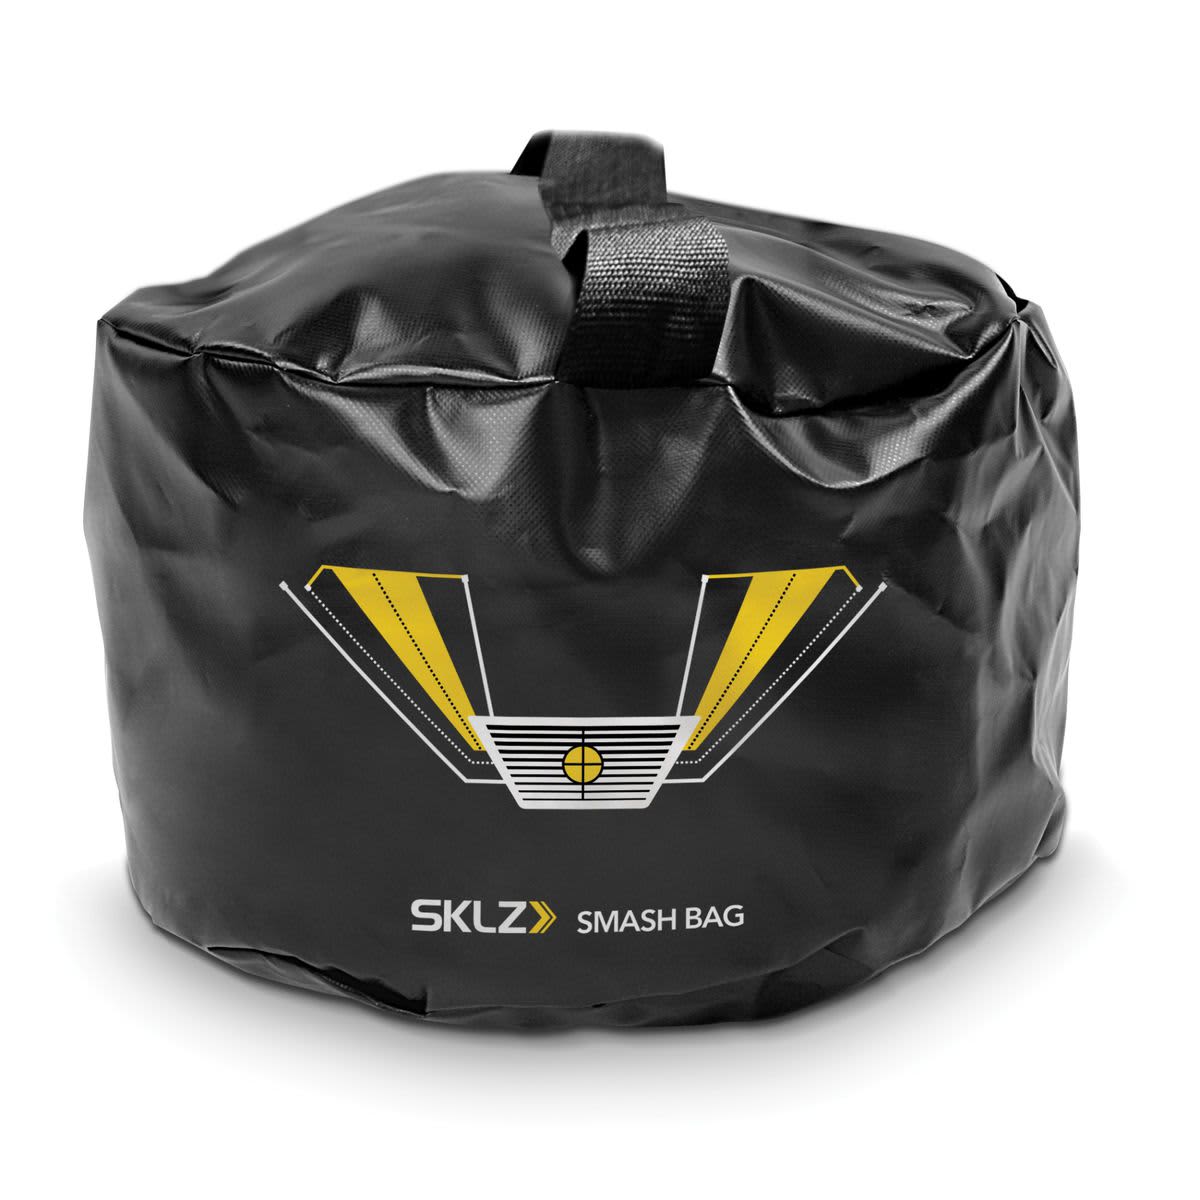 SKLZ Smash Bag Swing Trainer 2020